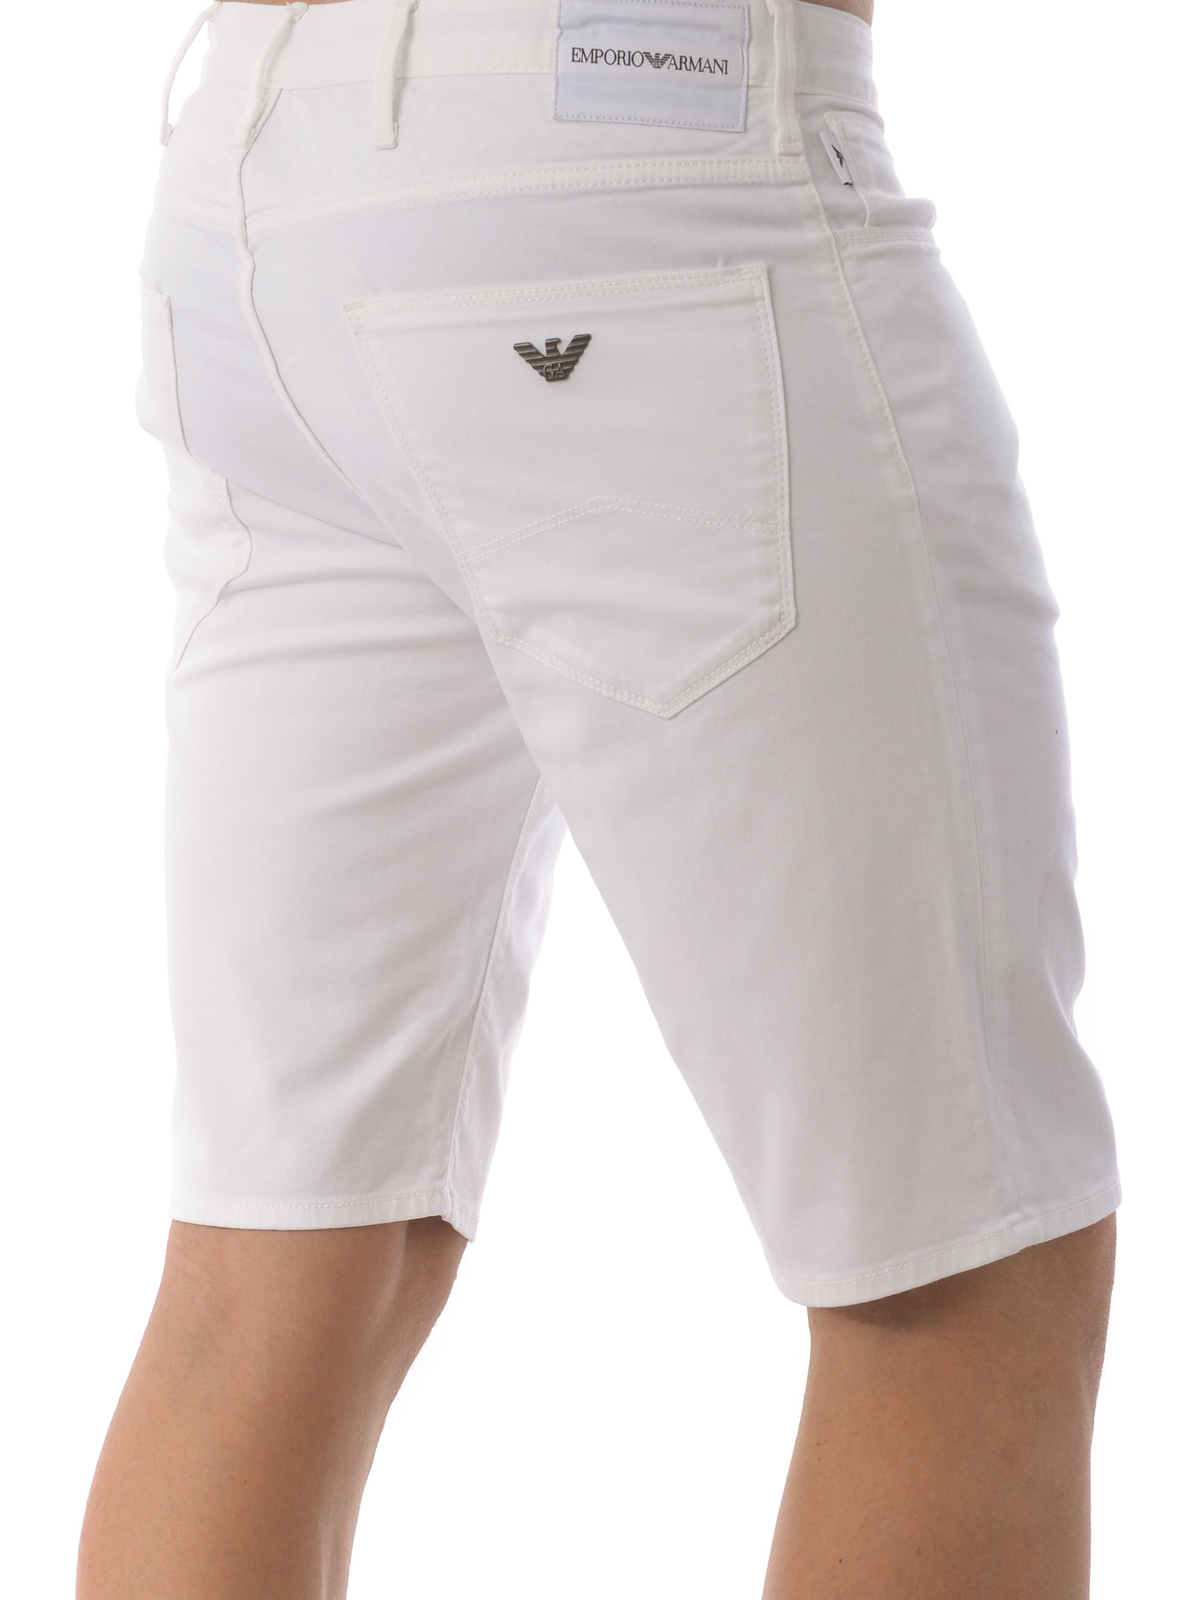 Procesando apretón Series de tiempo Shorts Emporio Armani - Shorts - Blanco - 3H1PA61N4ZZ0100 | iKRIX.com